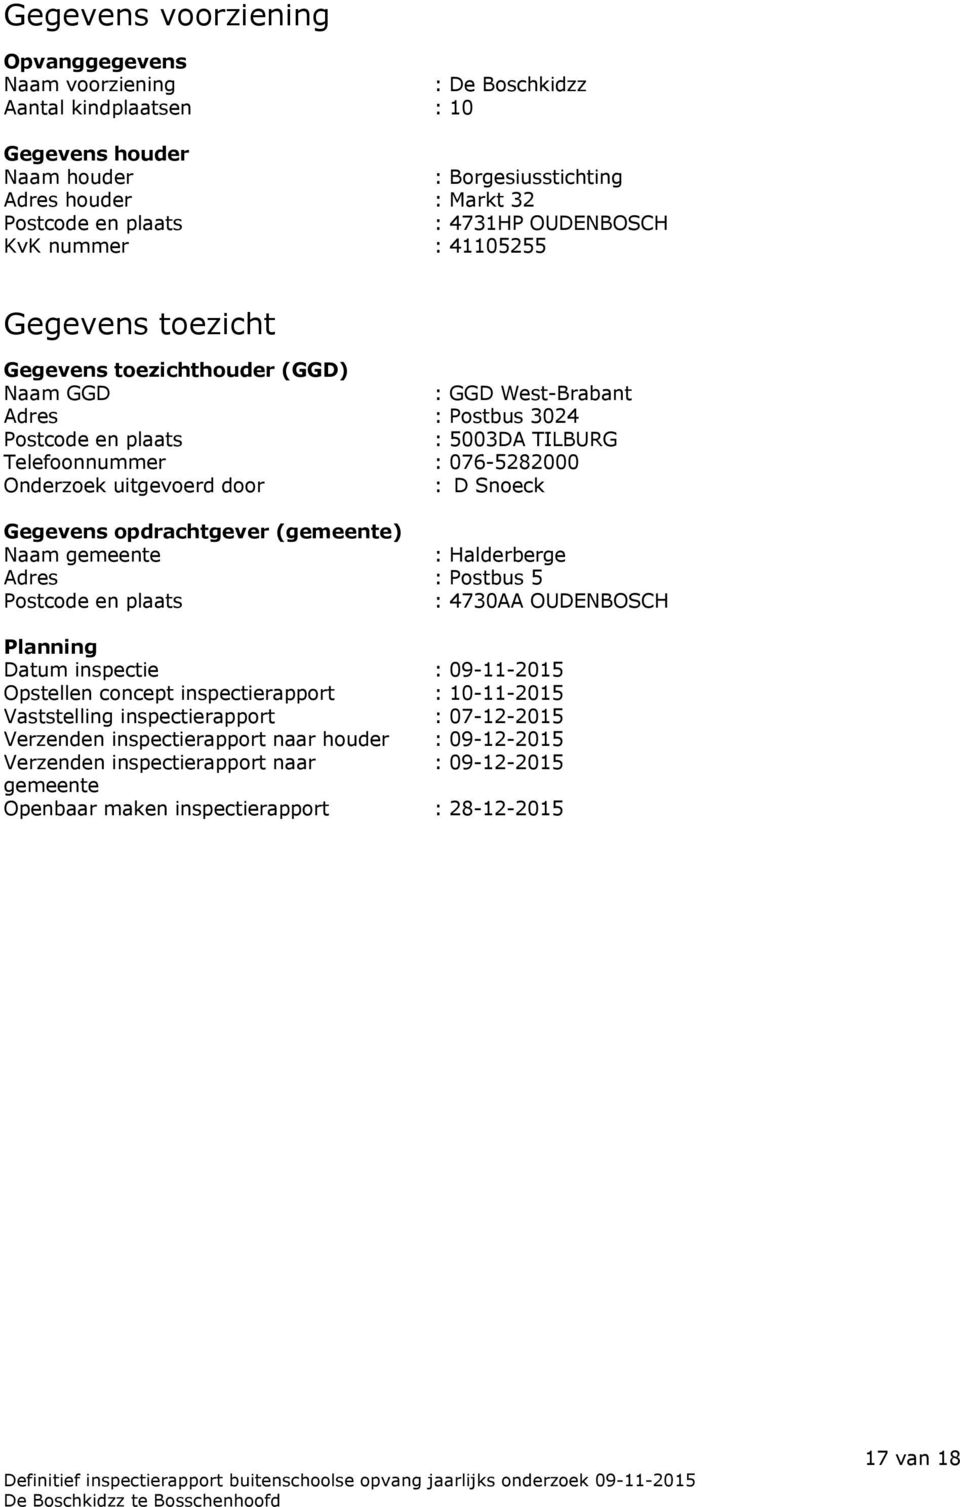 Onderzoek uitgevoerd door : D Snoeck Gegevens opdrachtgever (gemeente) Naam gemeente : Halderberge Adres : Postbus 5 Postcode en plaats : 4730AA OUDENBOSCH Planning Datum inspectie : 09-11-2015